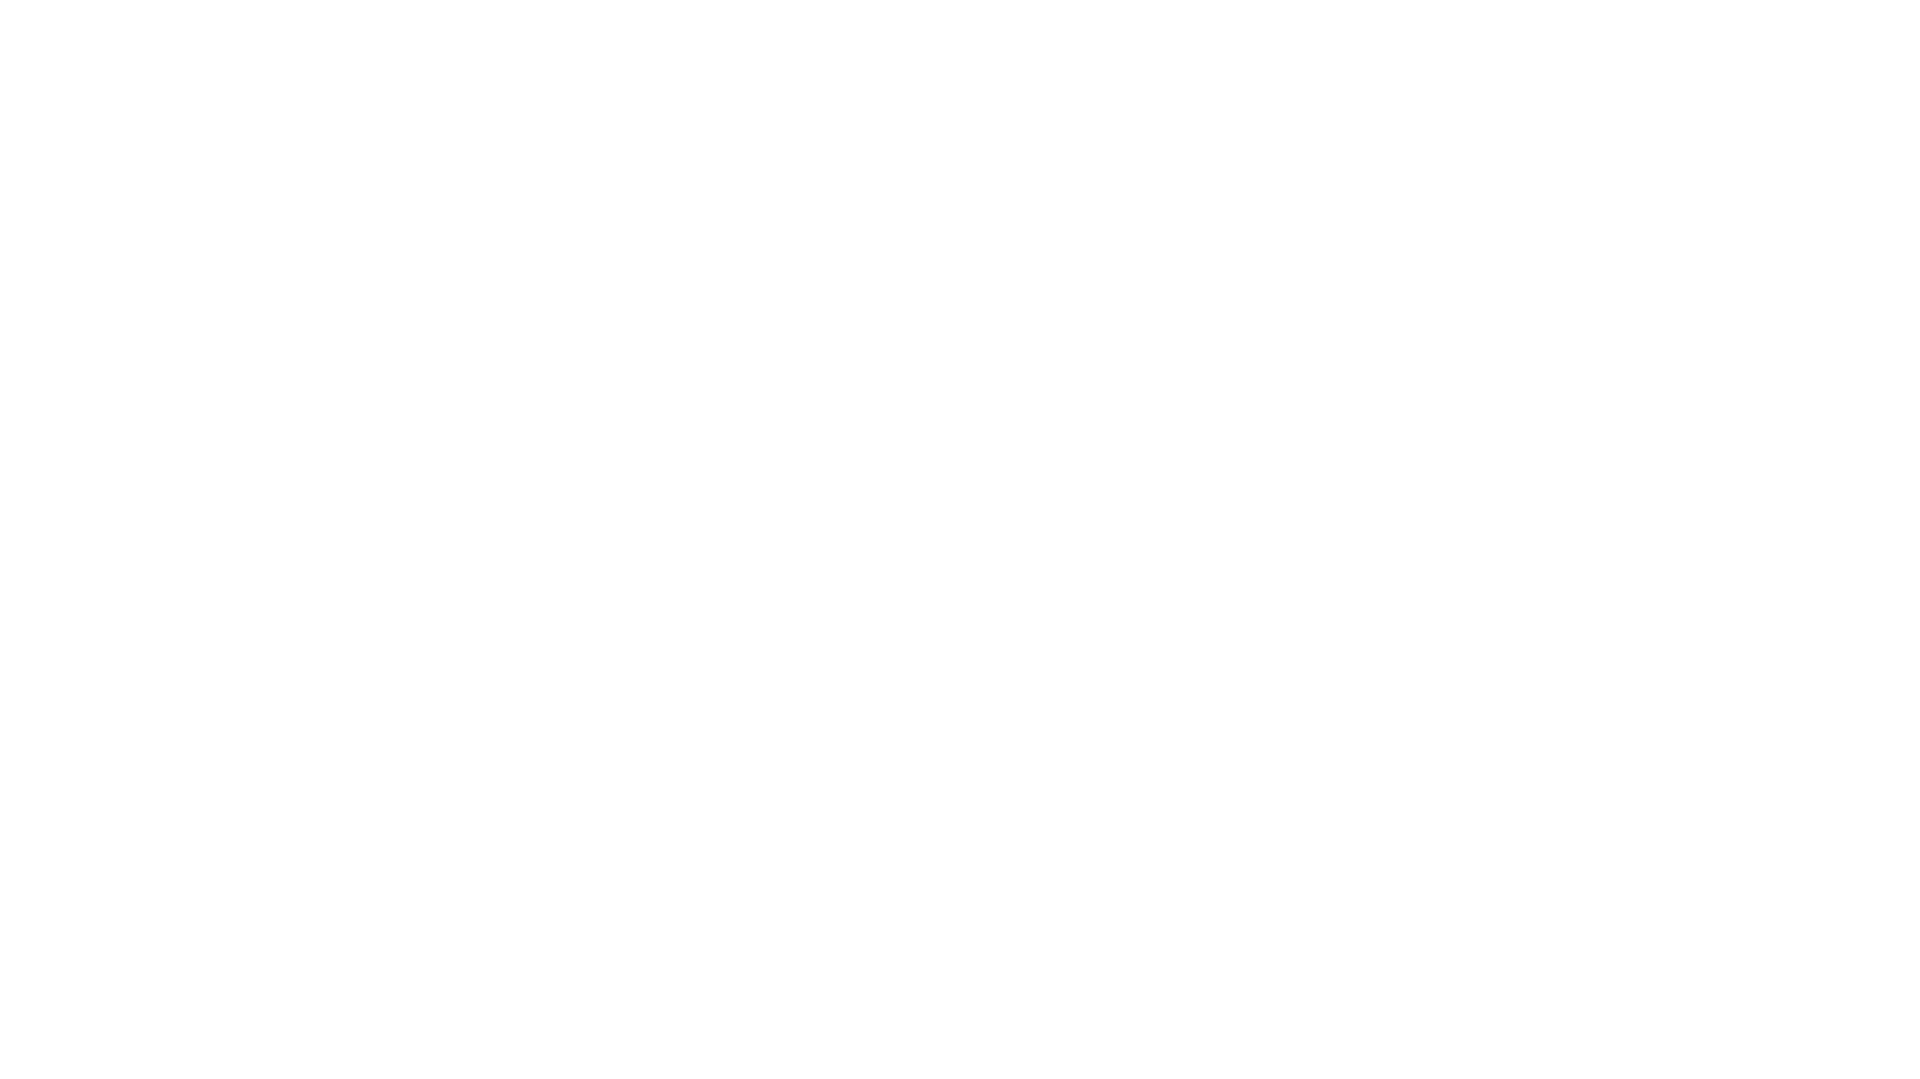 Fond za inovacije Crne Gore